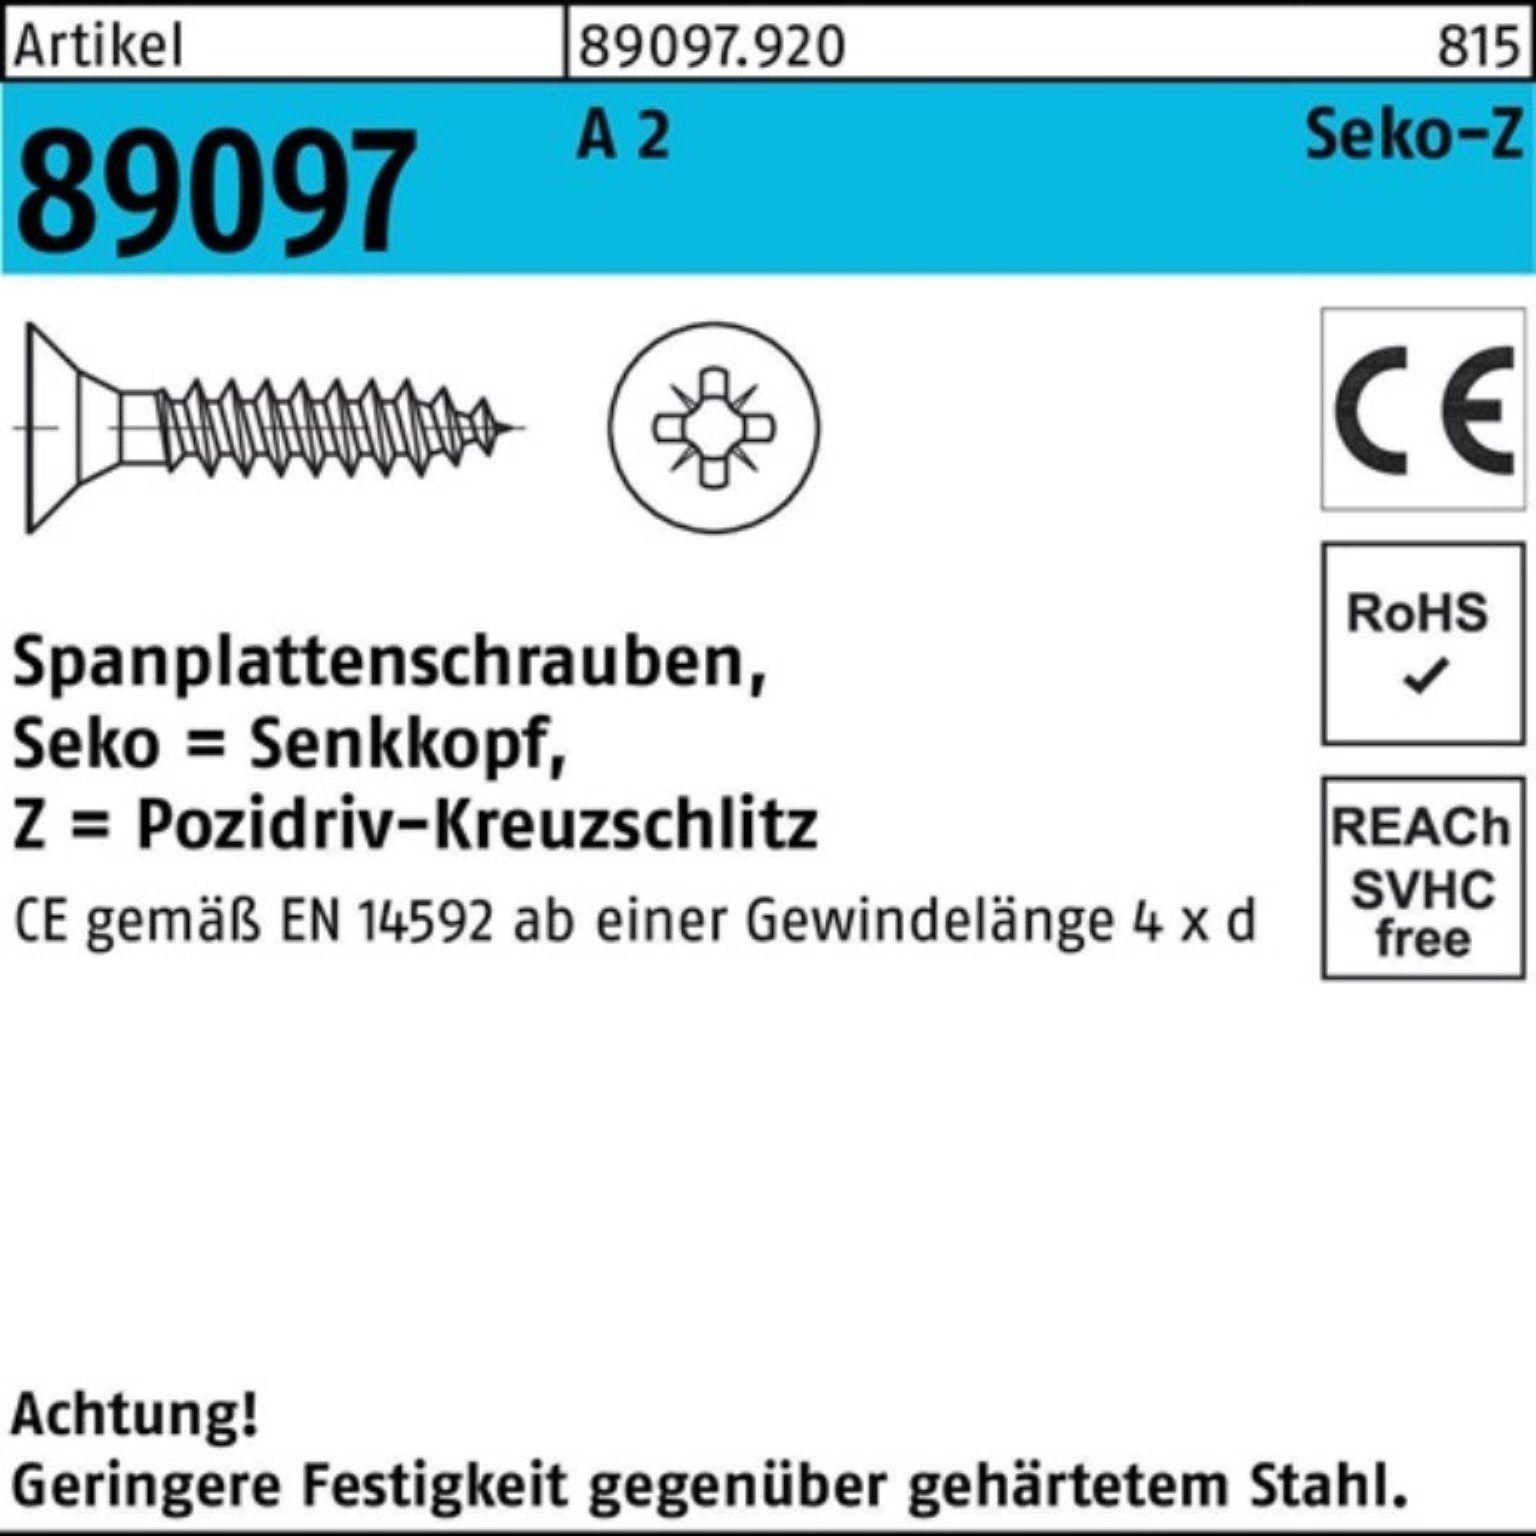 SEKO 2 Pack A Spanplattenschraube PZ VG R Reyher 89097 Spanplattenschraube 500 4,5x 40-Z 500er St